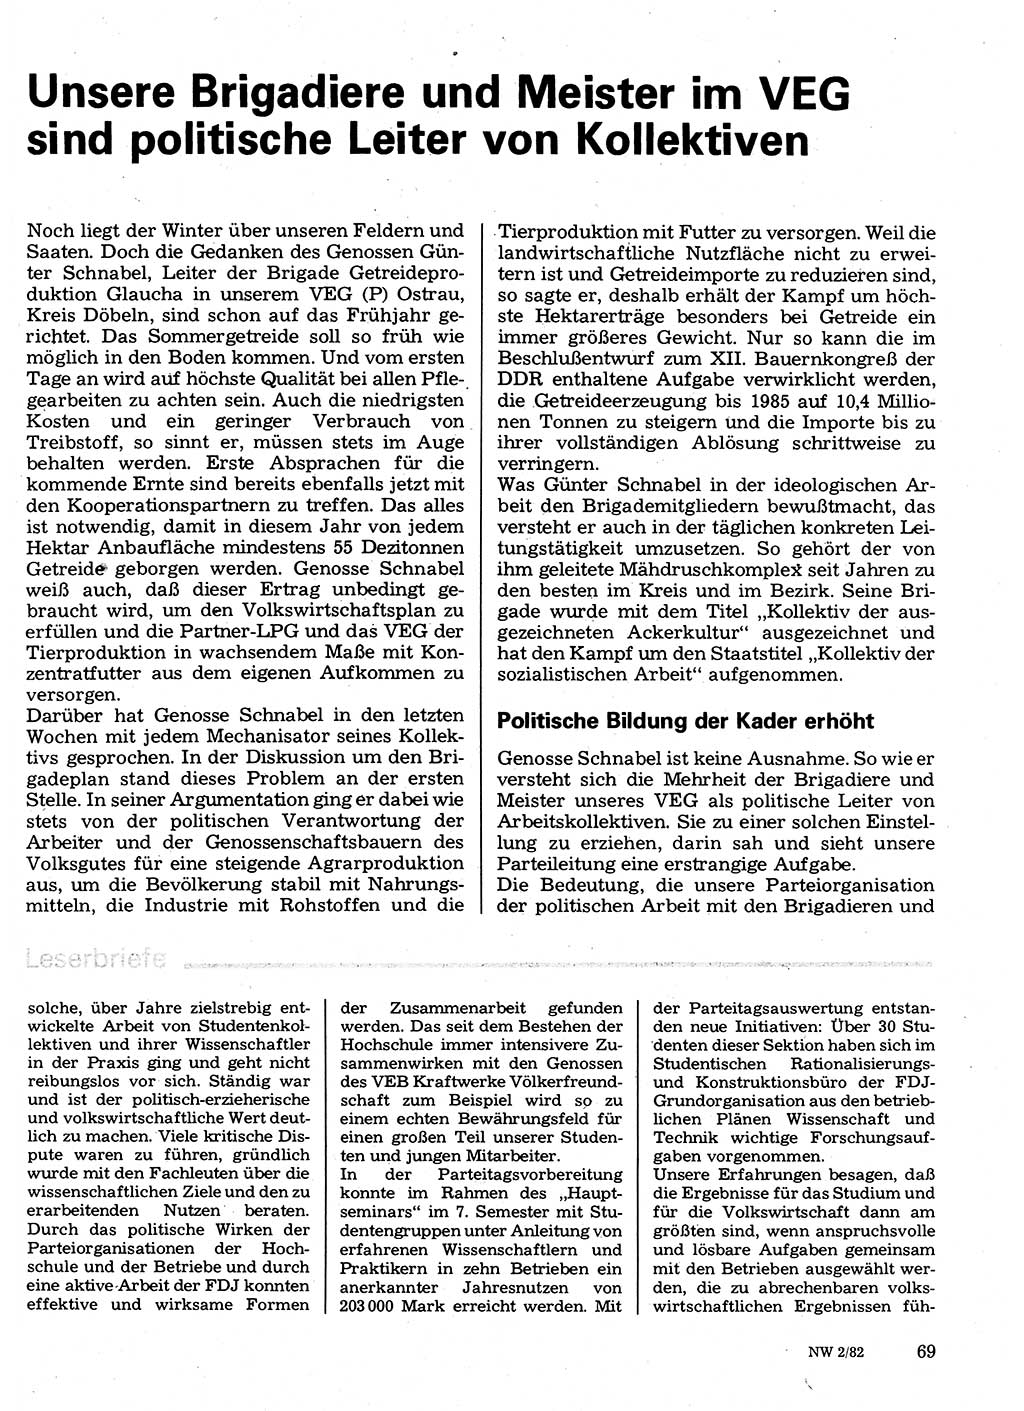 Neuer Weg (NW), Organ des Zentralkomitees (ZK) der SED (Sozialistische Einheitspartei Deutschlands) für Fragen des Parteilebens, 37. Jahrgang [Deutsche Demokratische Republik (DDR)] 1982, Seite 69 (NW ZK SED DDR 1982, S. 69)